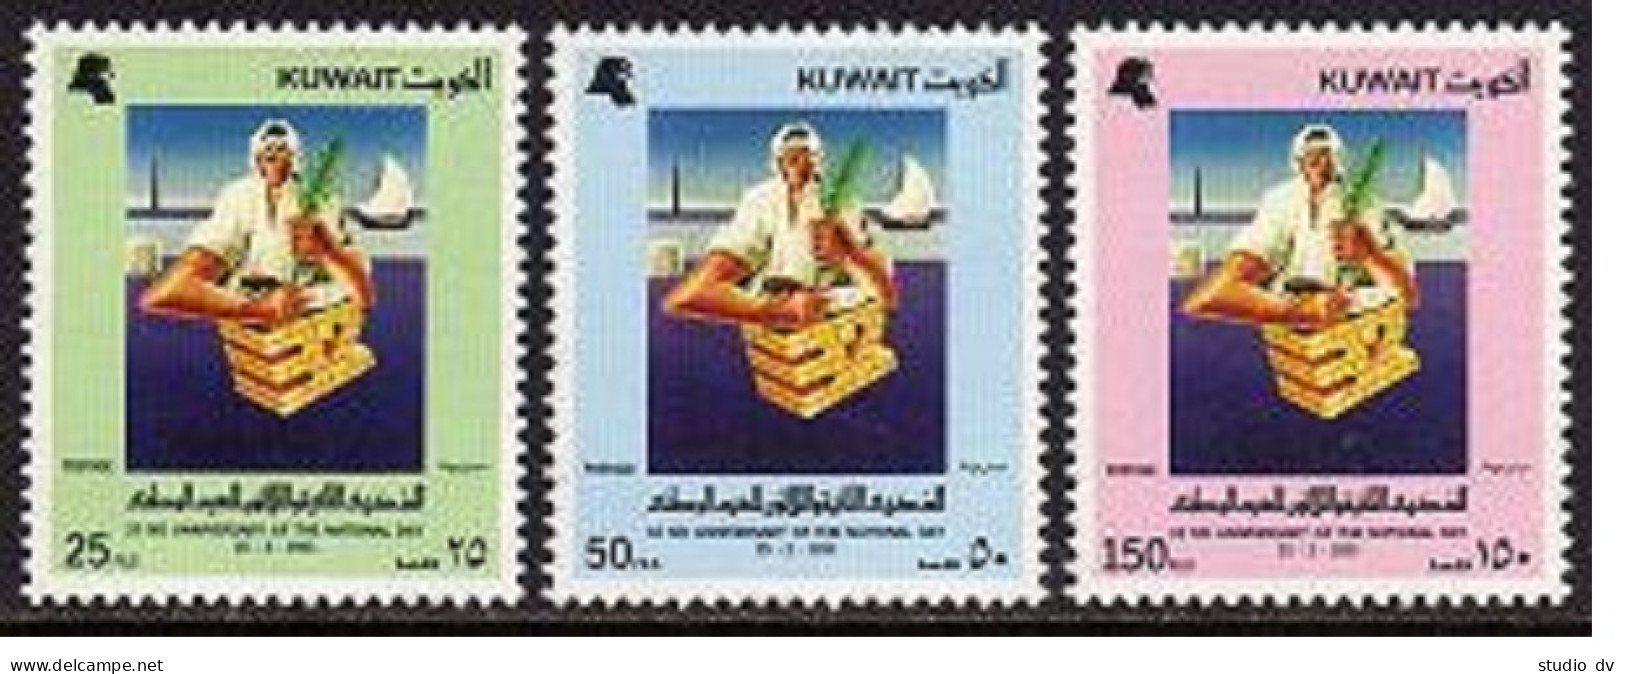 Kuwait 1208-1210, MNH. Michel 1305-1312 MH. 32th National Day, 1983. Ship. - Kuwait